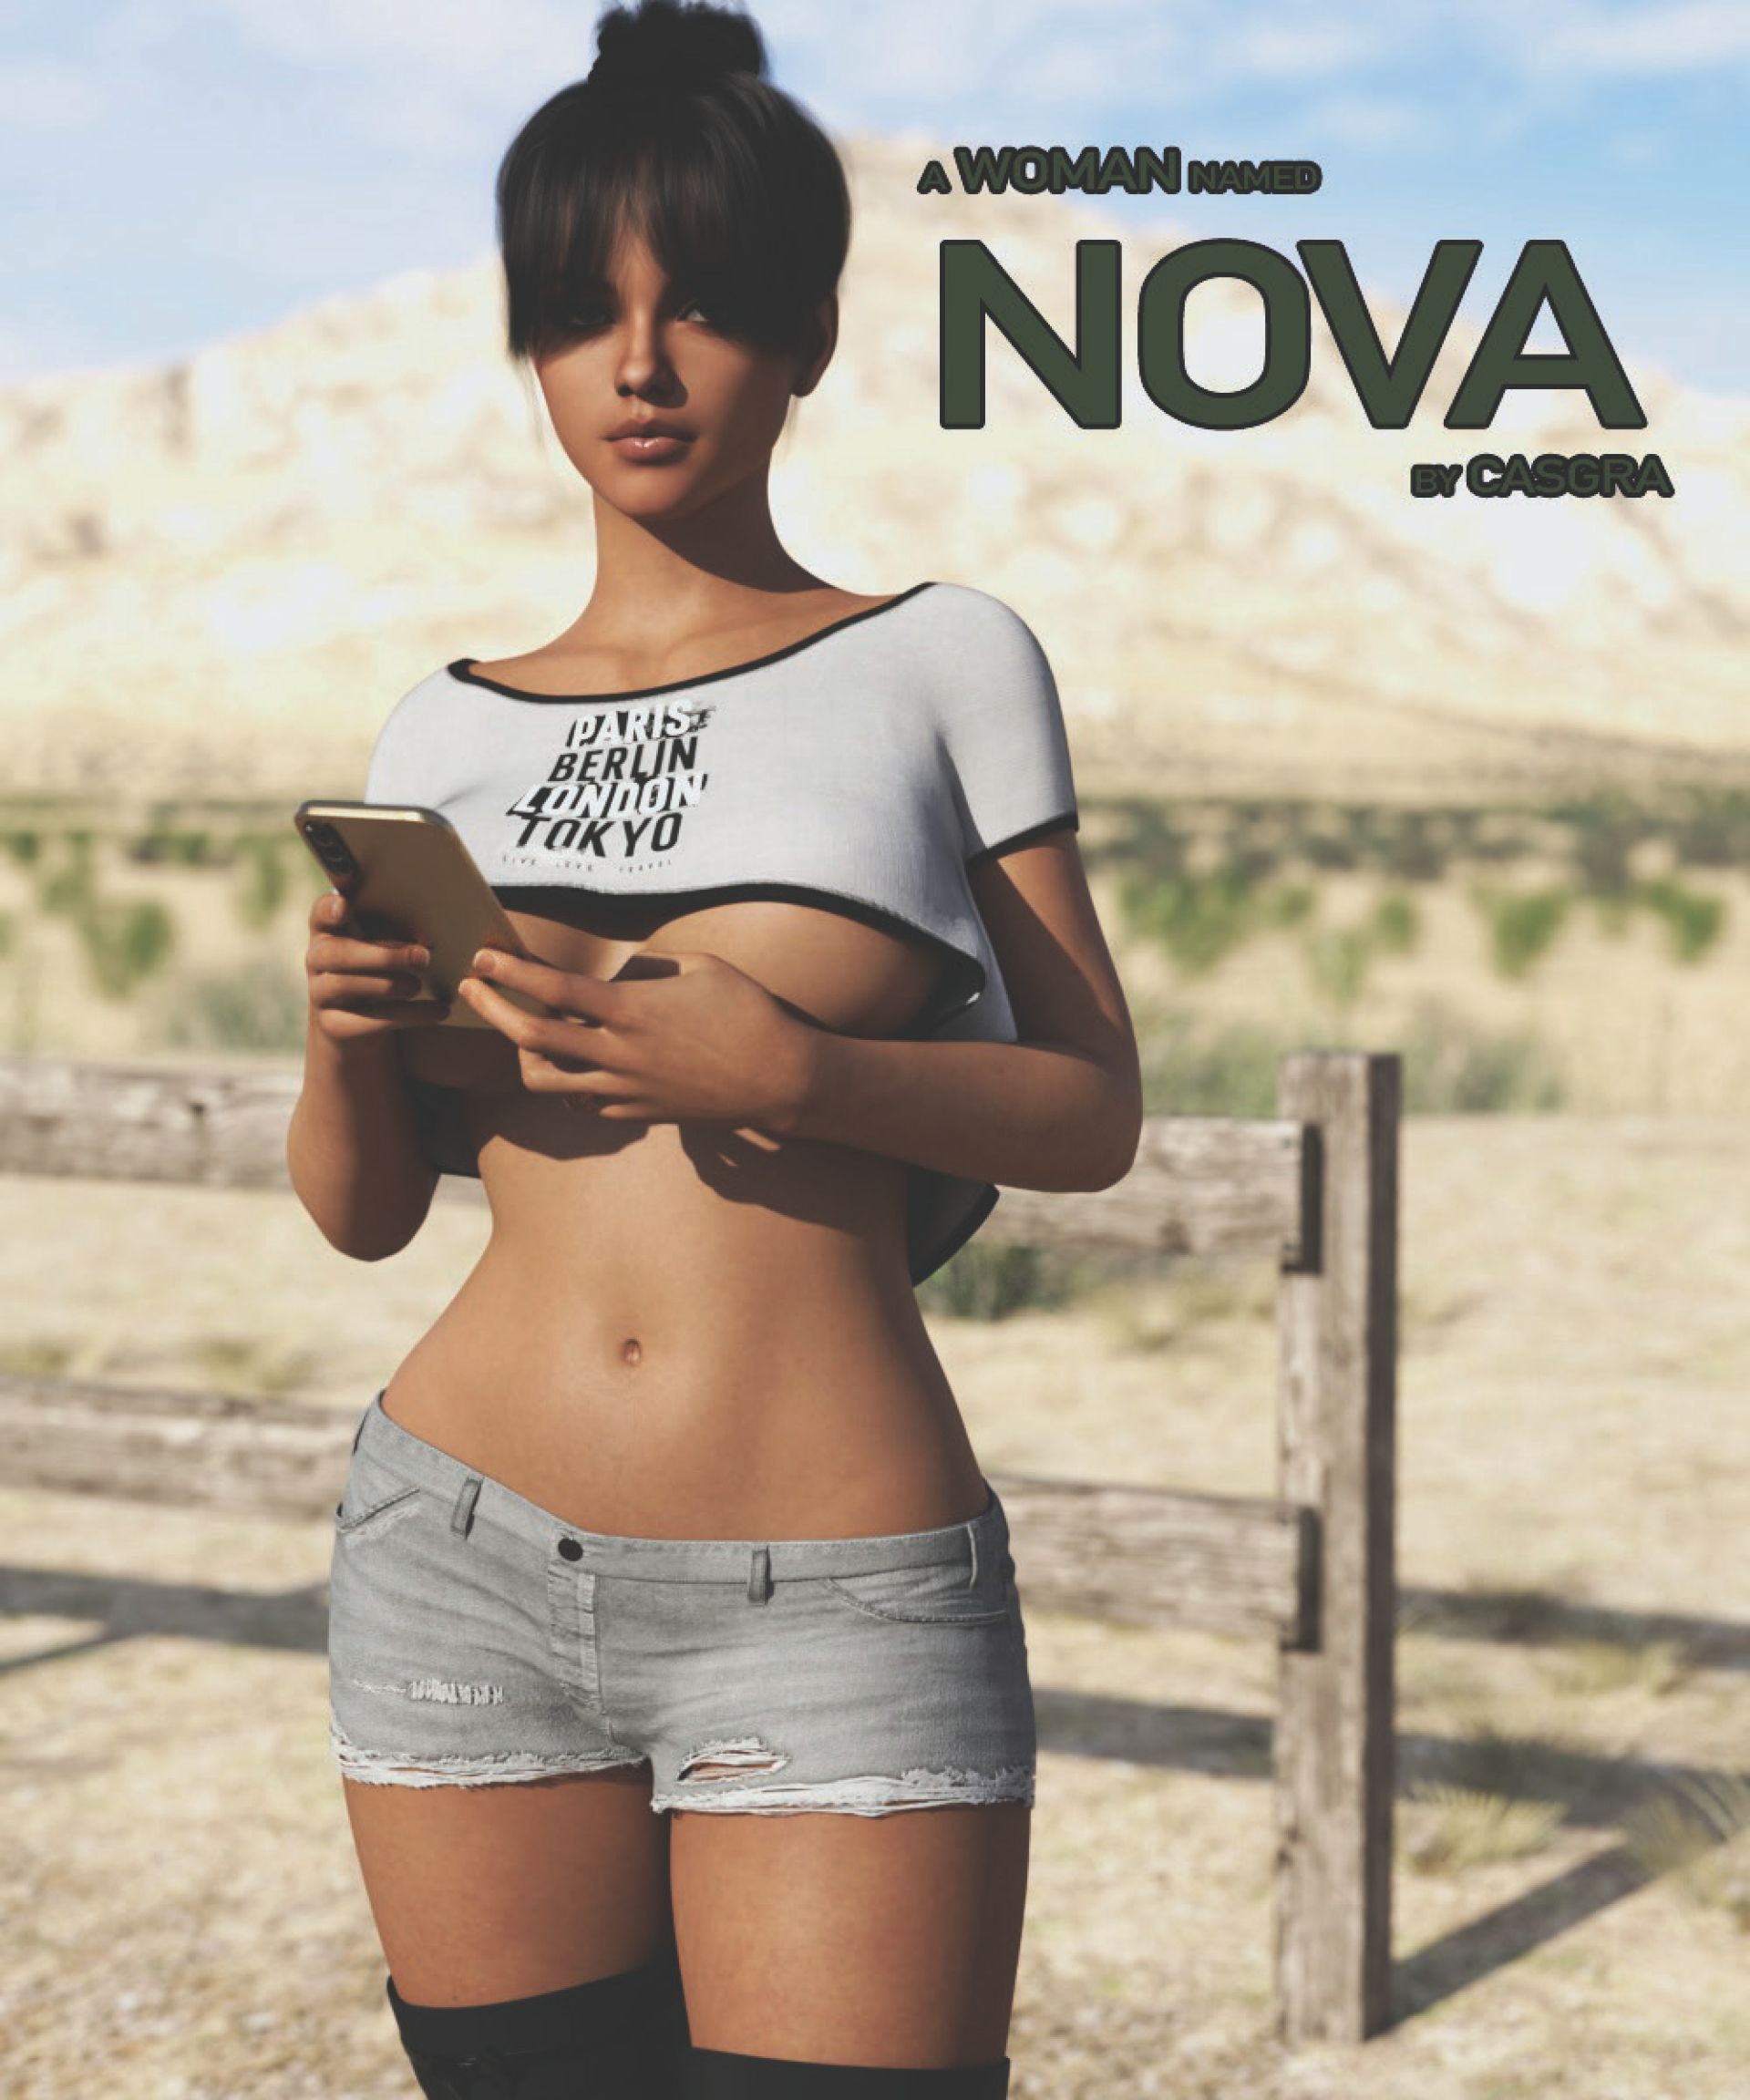 A Woman Named Nova Casgra Porn Comic pic